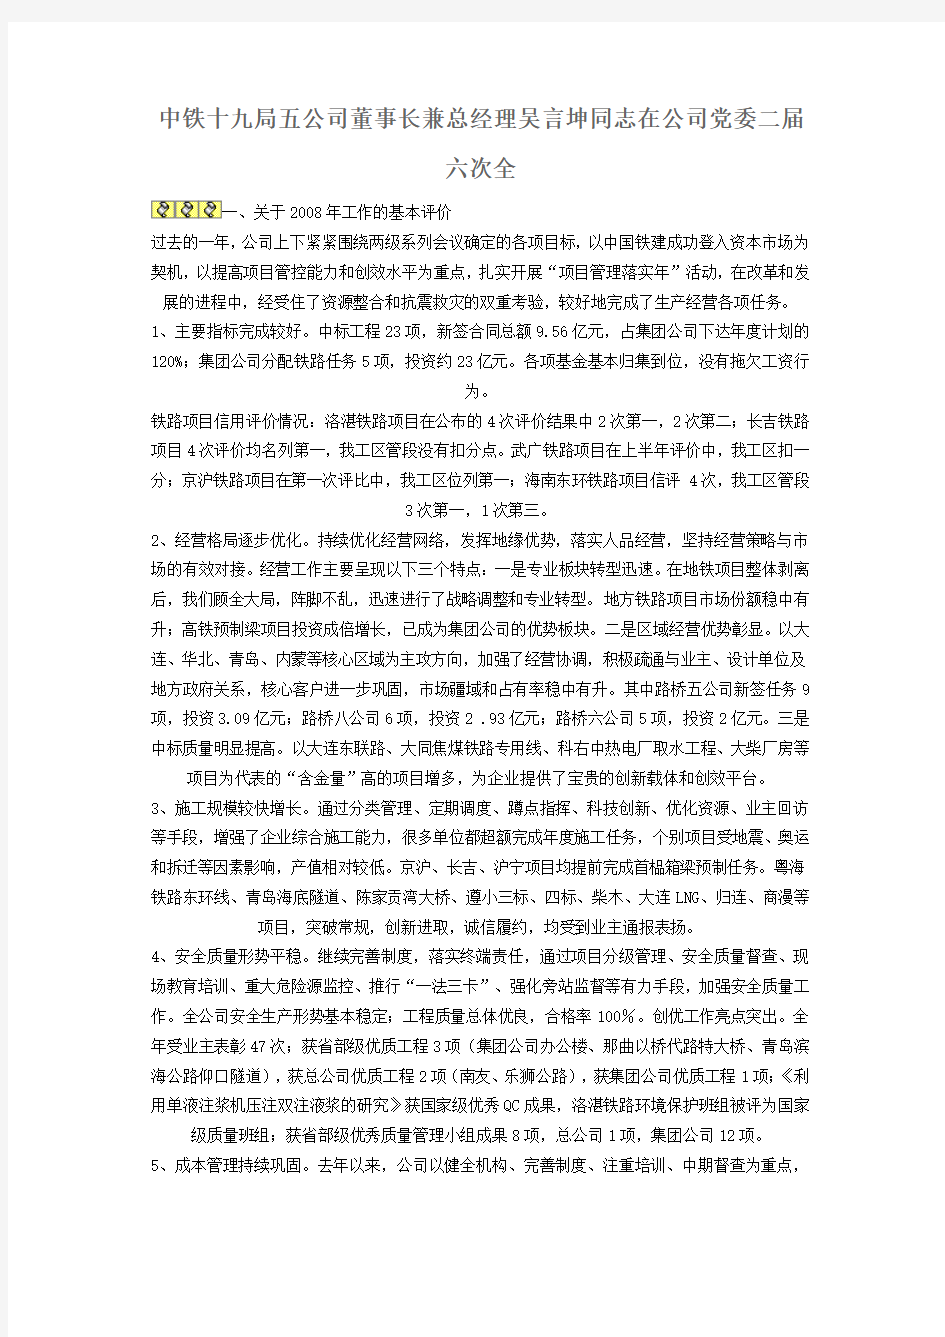 中铁十九局五公司董事长兼总经理吴言坤同志在公司党委二届六次全